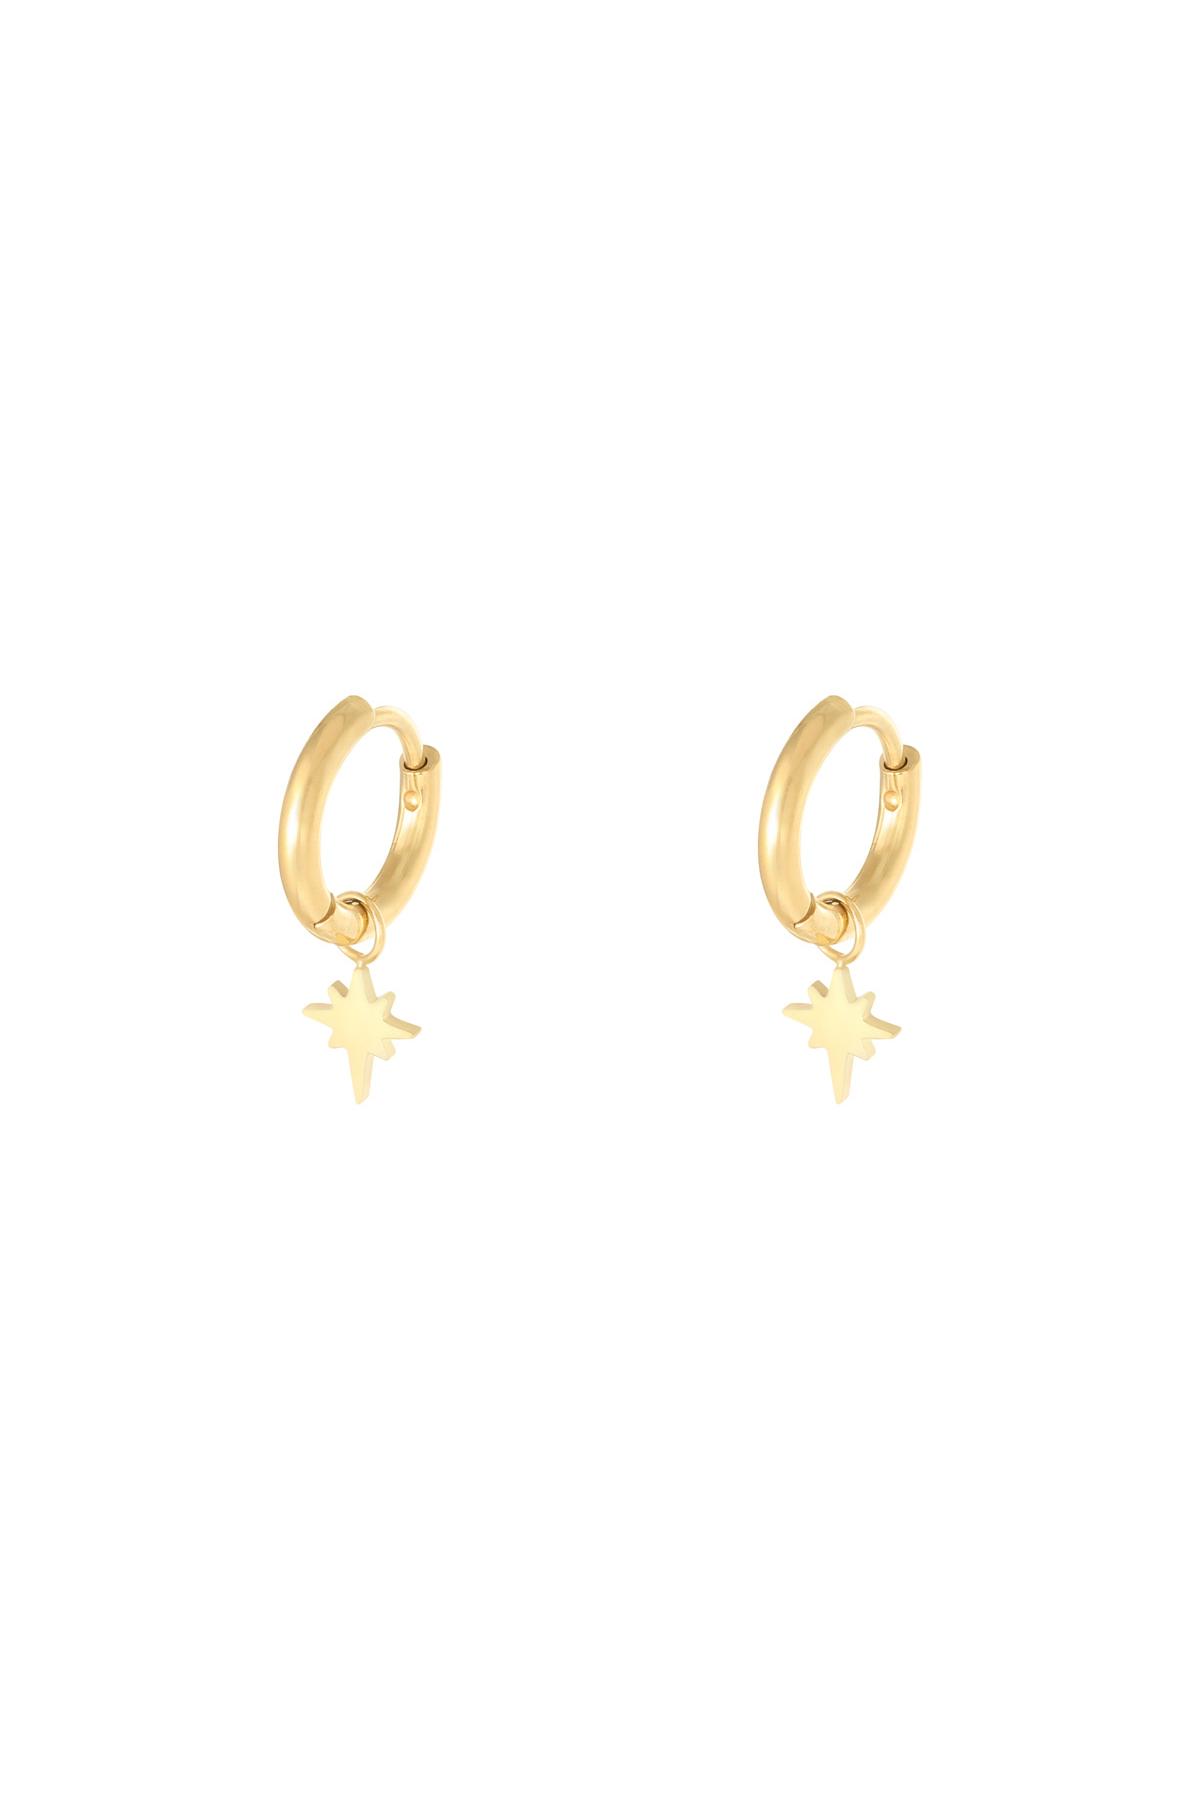 Earrings Spark Gold Stainless Steel h5 